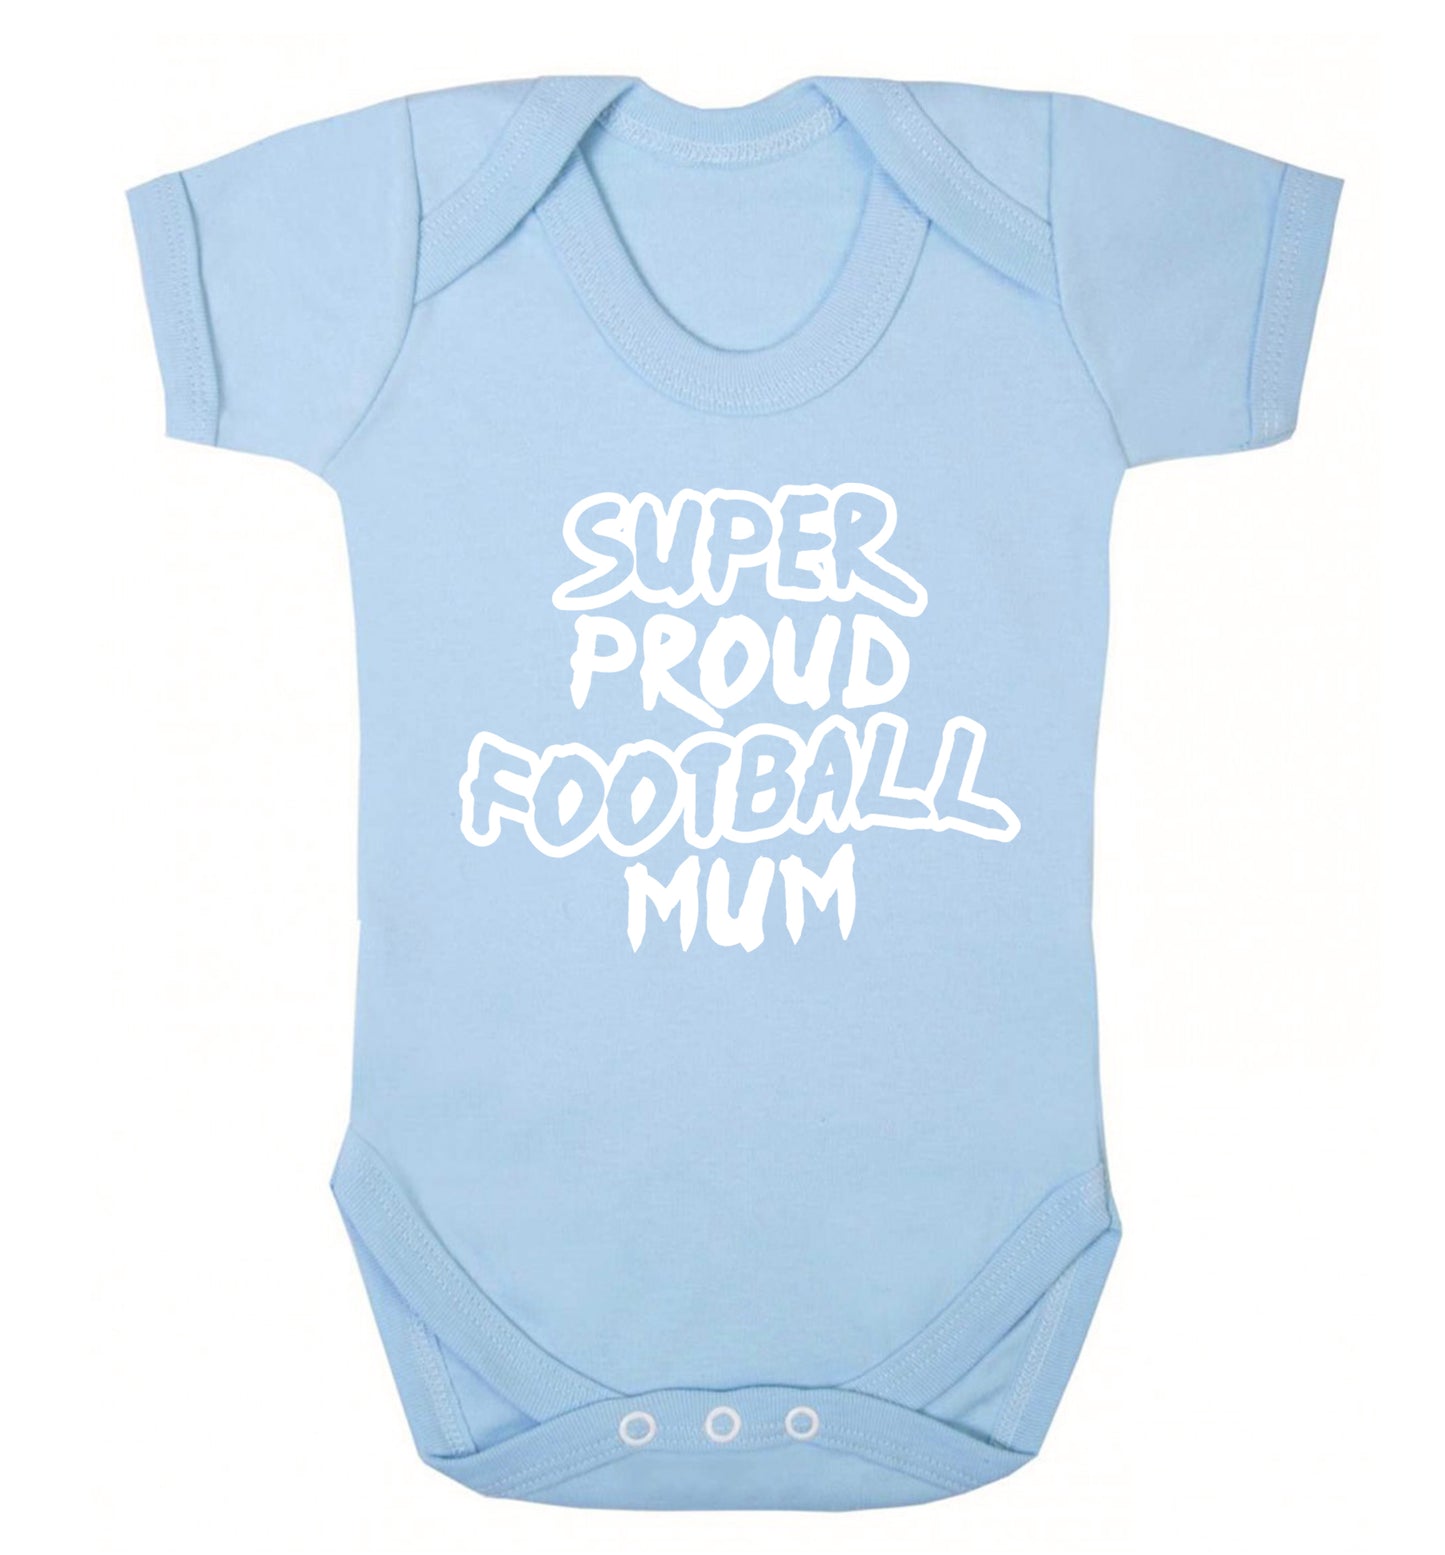 Super proud football mum Baby Vest pale blue 18-24 months